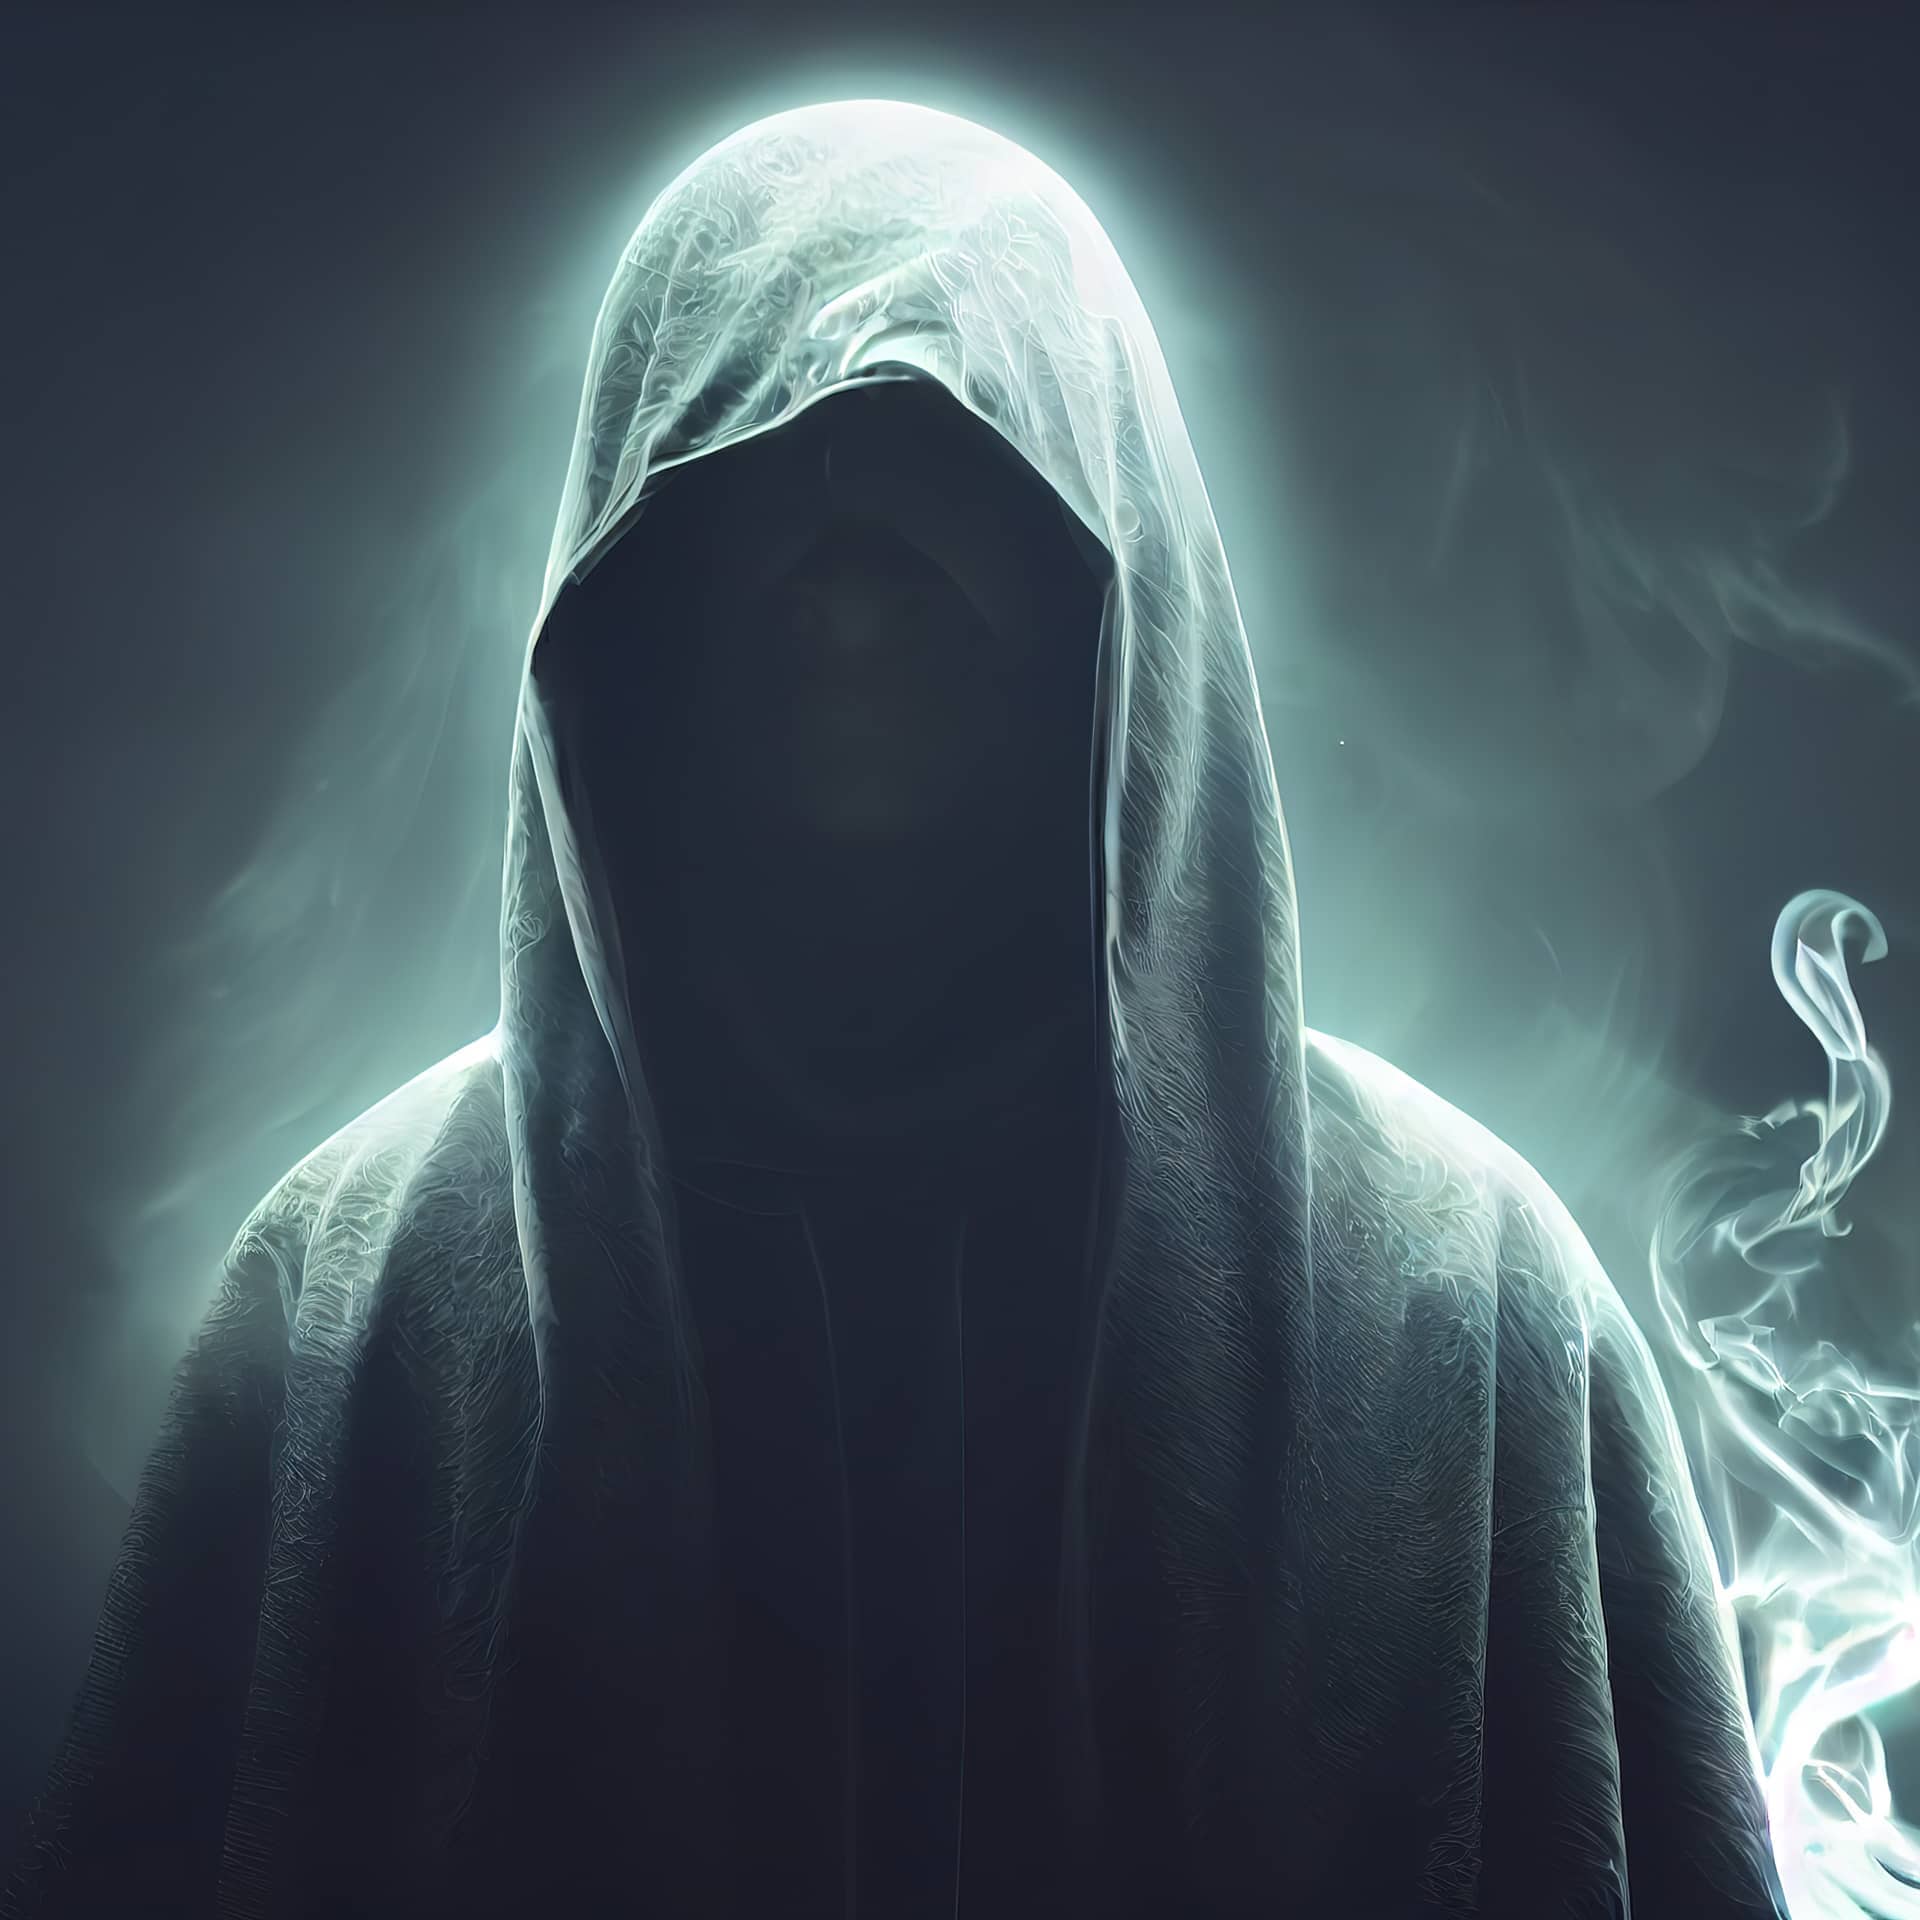 Scary figure hooded cloak dark 3d render raster cool instagram profile pics